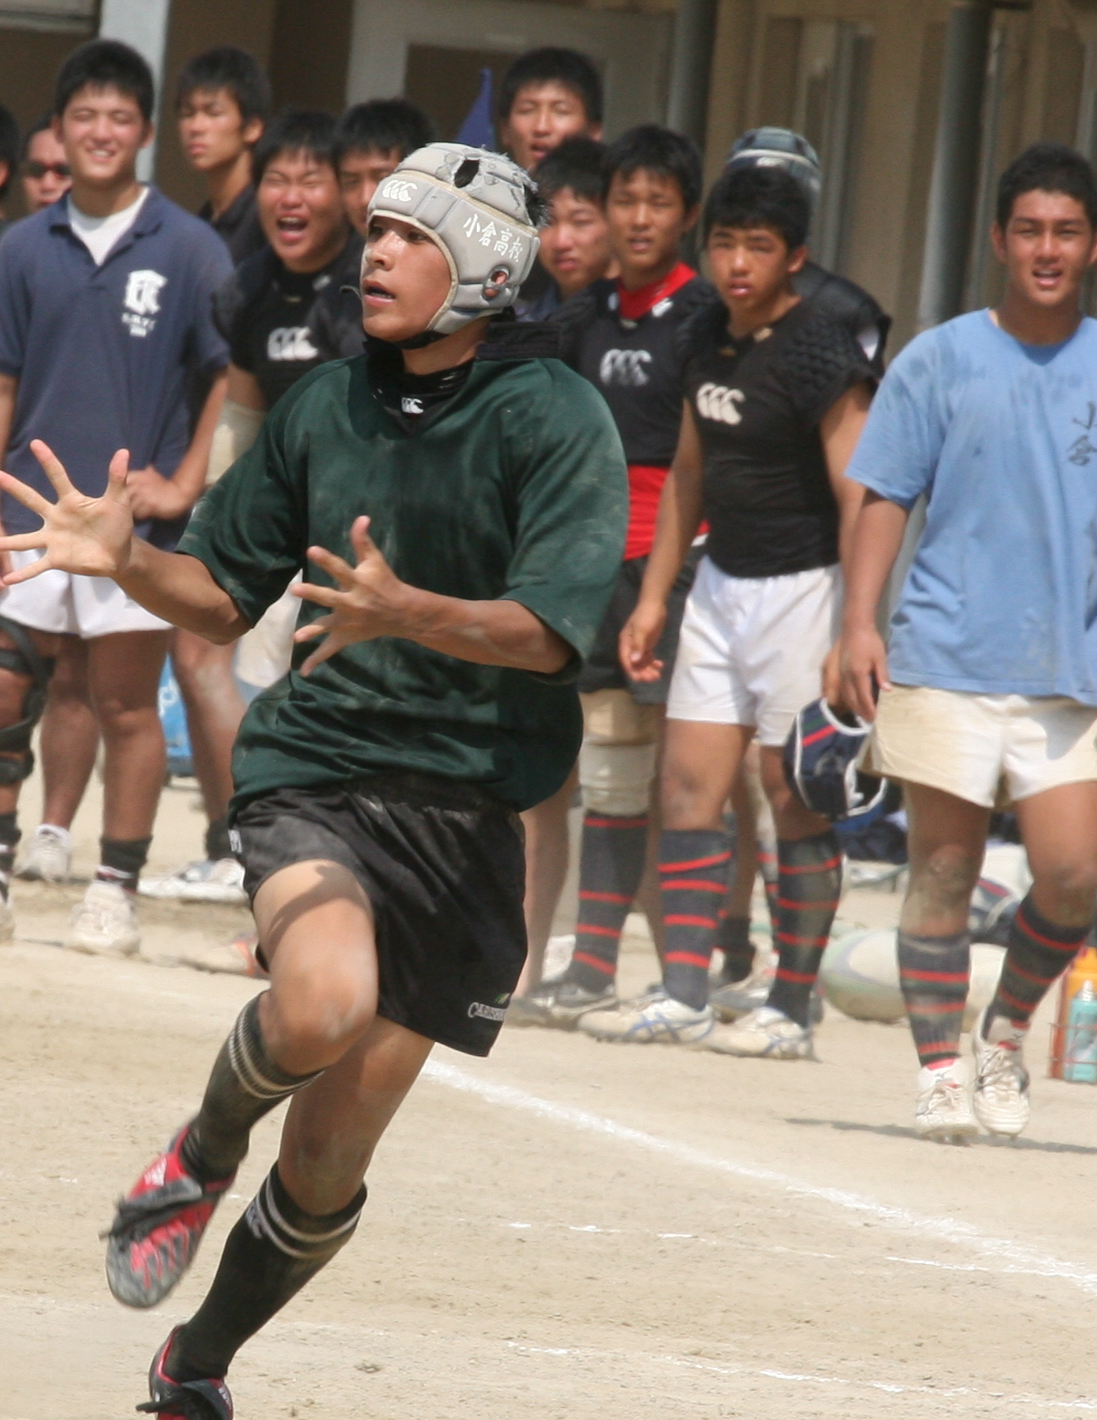 http://kokura-rugby.sakura.ne.jp/1%E3%83%BBBK%20%E6%9C%89%E7%94%B0%E5%B0%86%E6%82%9F.JPG